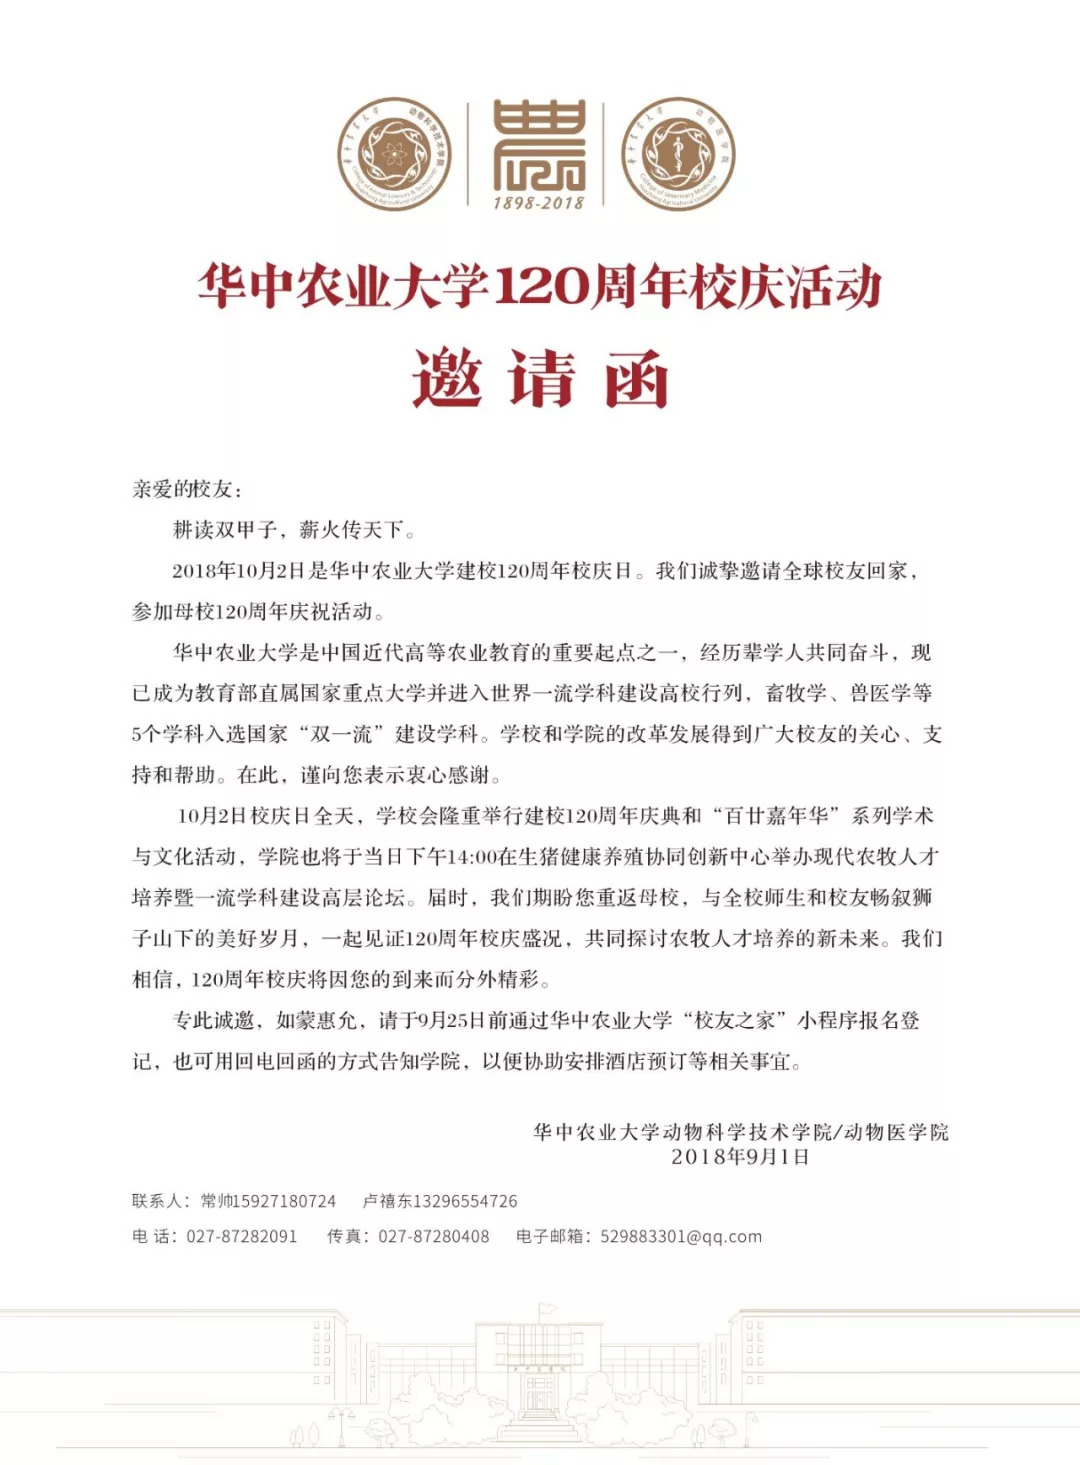 华中农业大学120周年校庆活动邀请函